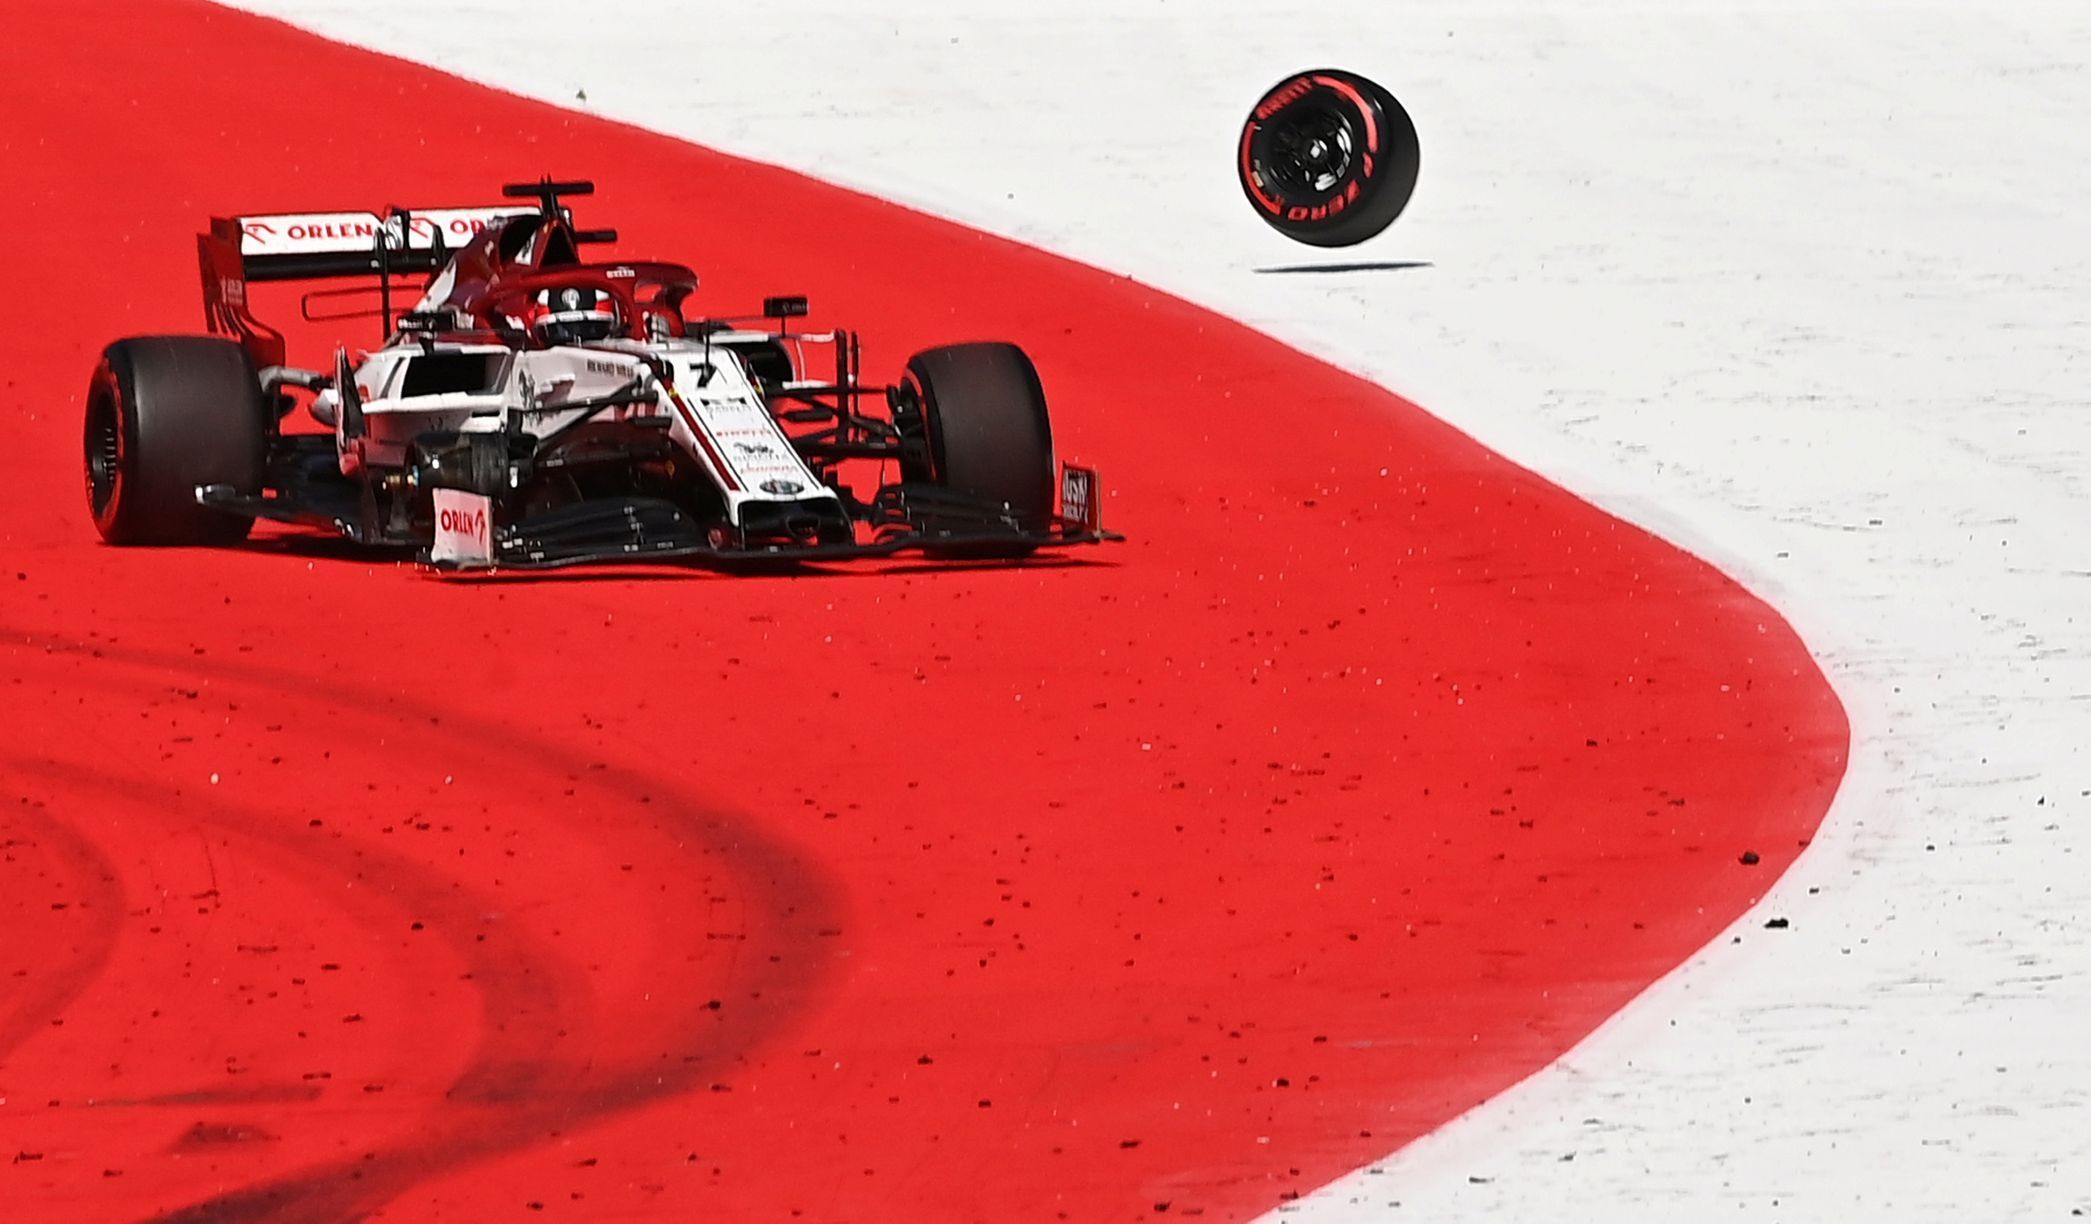 Havarovaná Alfa Romeo Kimiho Räikkönena v GP Rakouska F1 2020